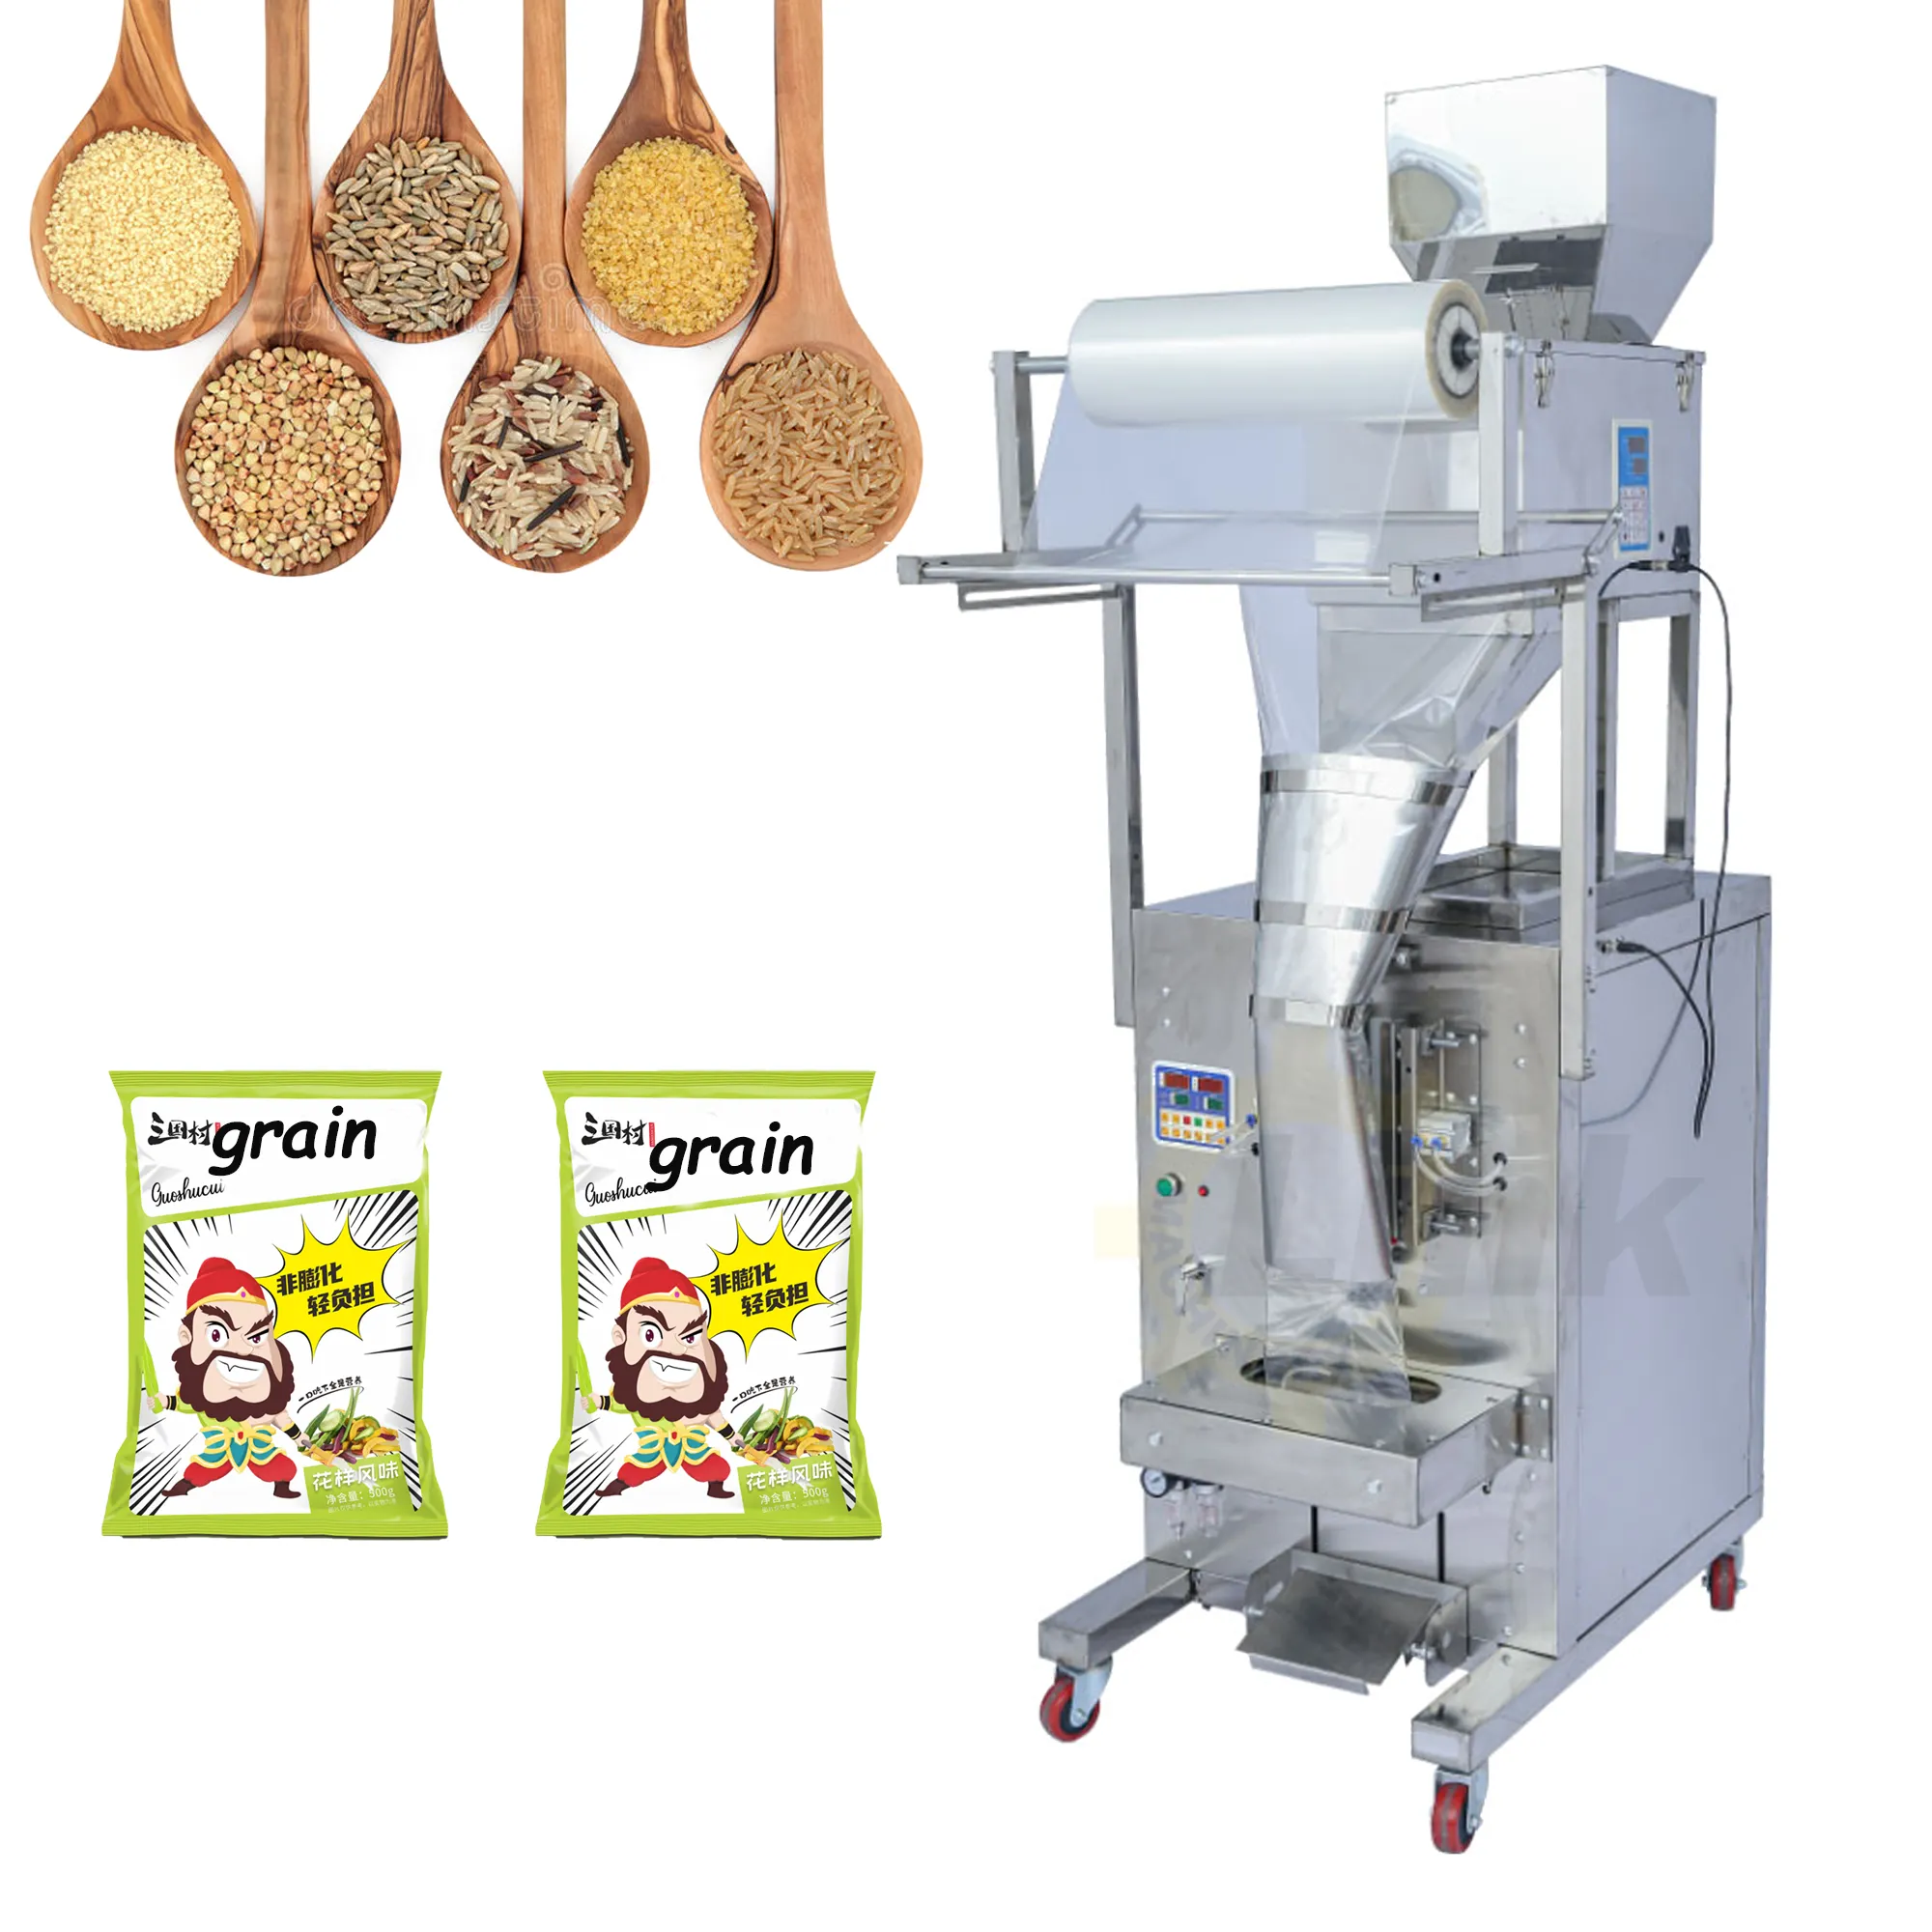 Mesin kemasan kantong Almond kacang Pistachio otomatis mesin kemasan kacang kacang kenari buah kering mesin kantong plastik kecil